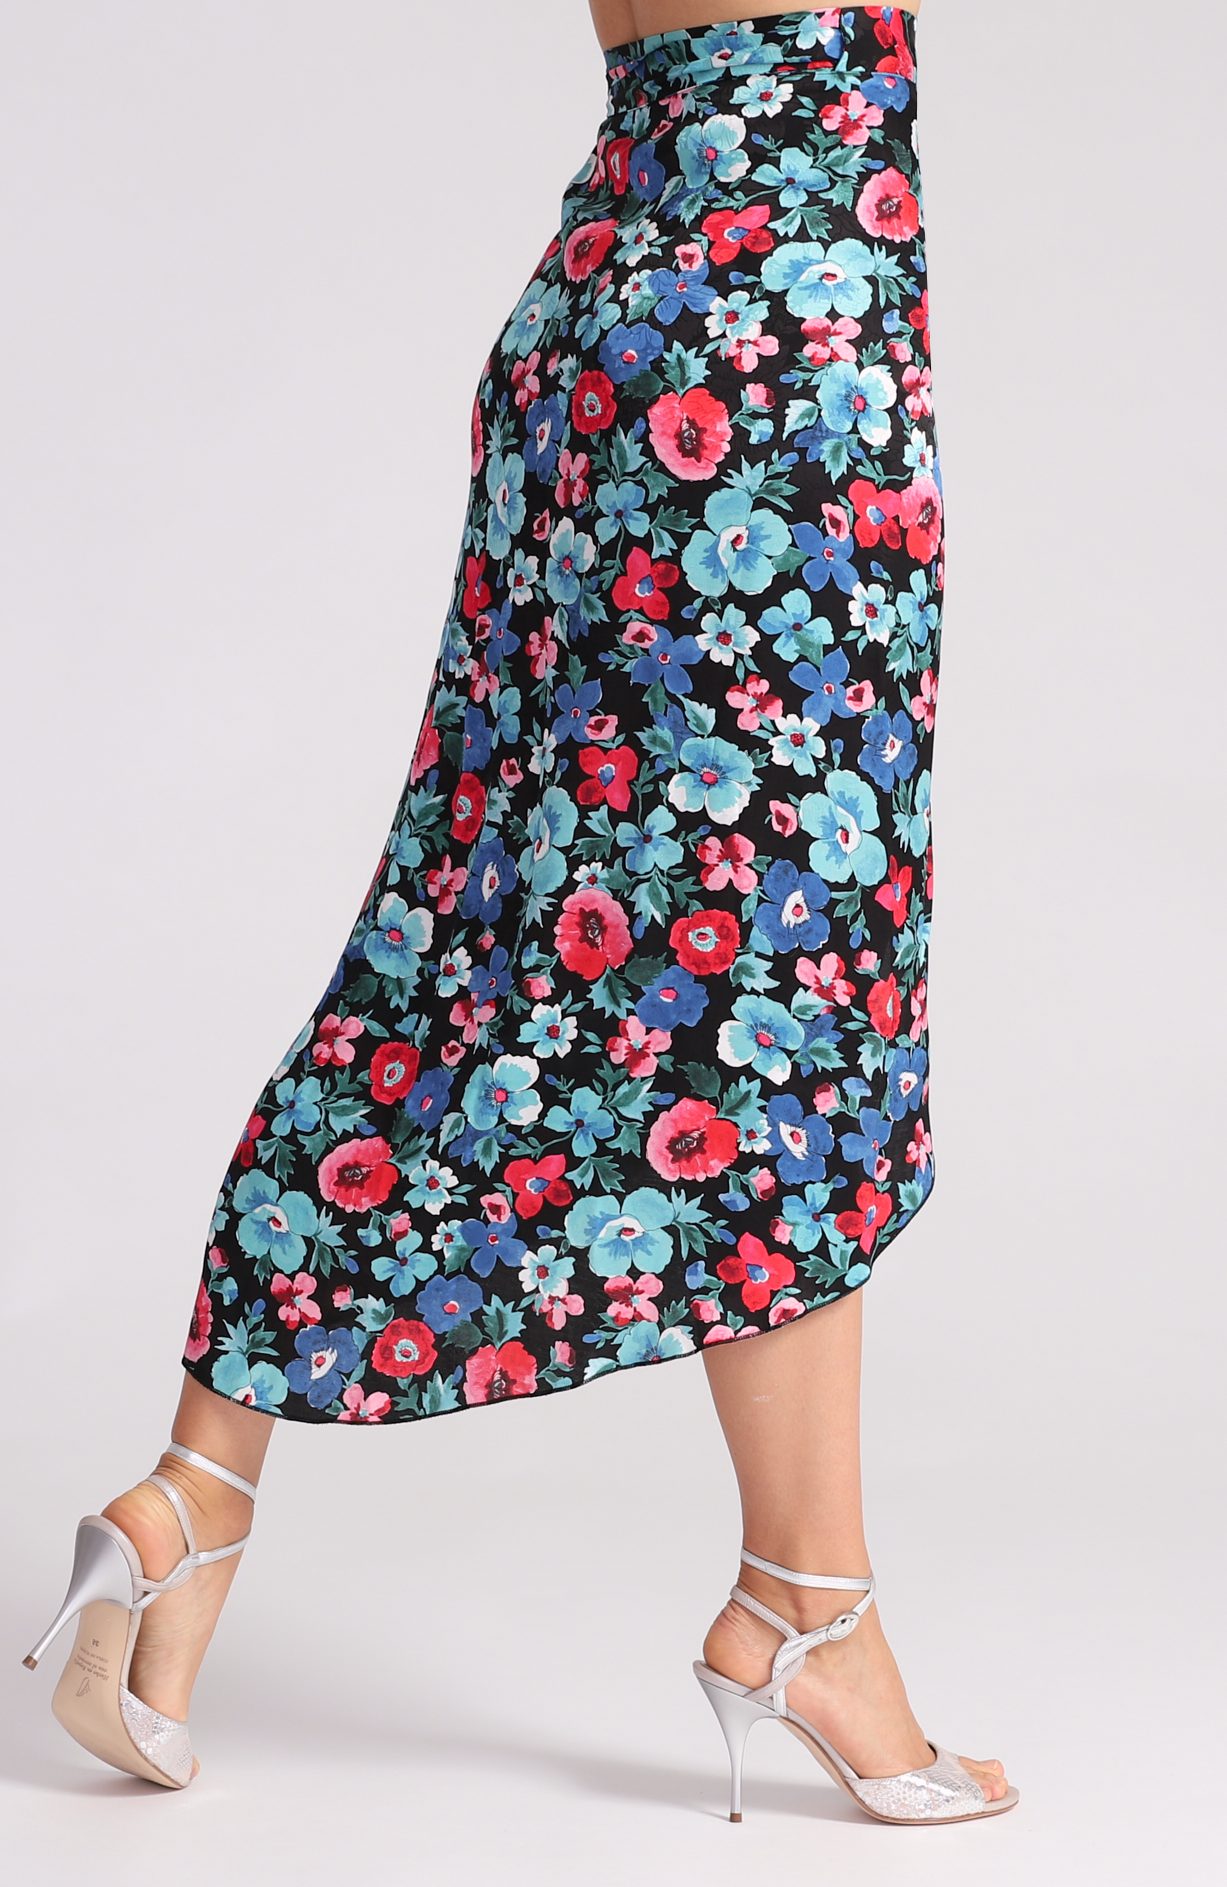 JULIET - Wrap Skirt in Poppy Print